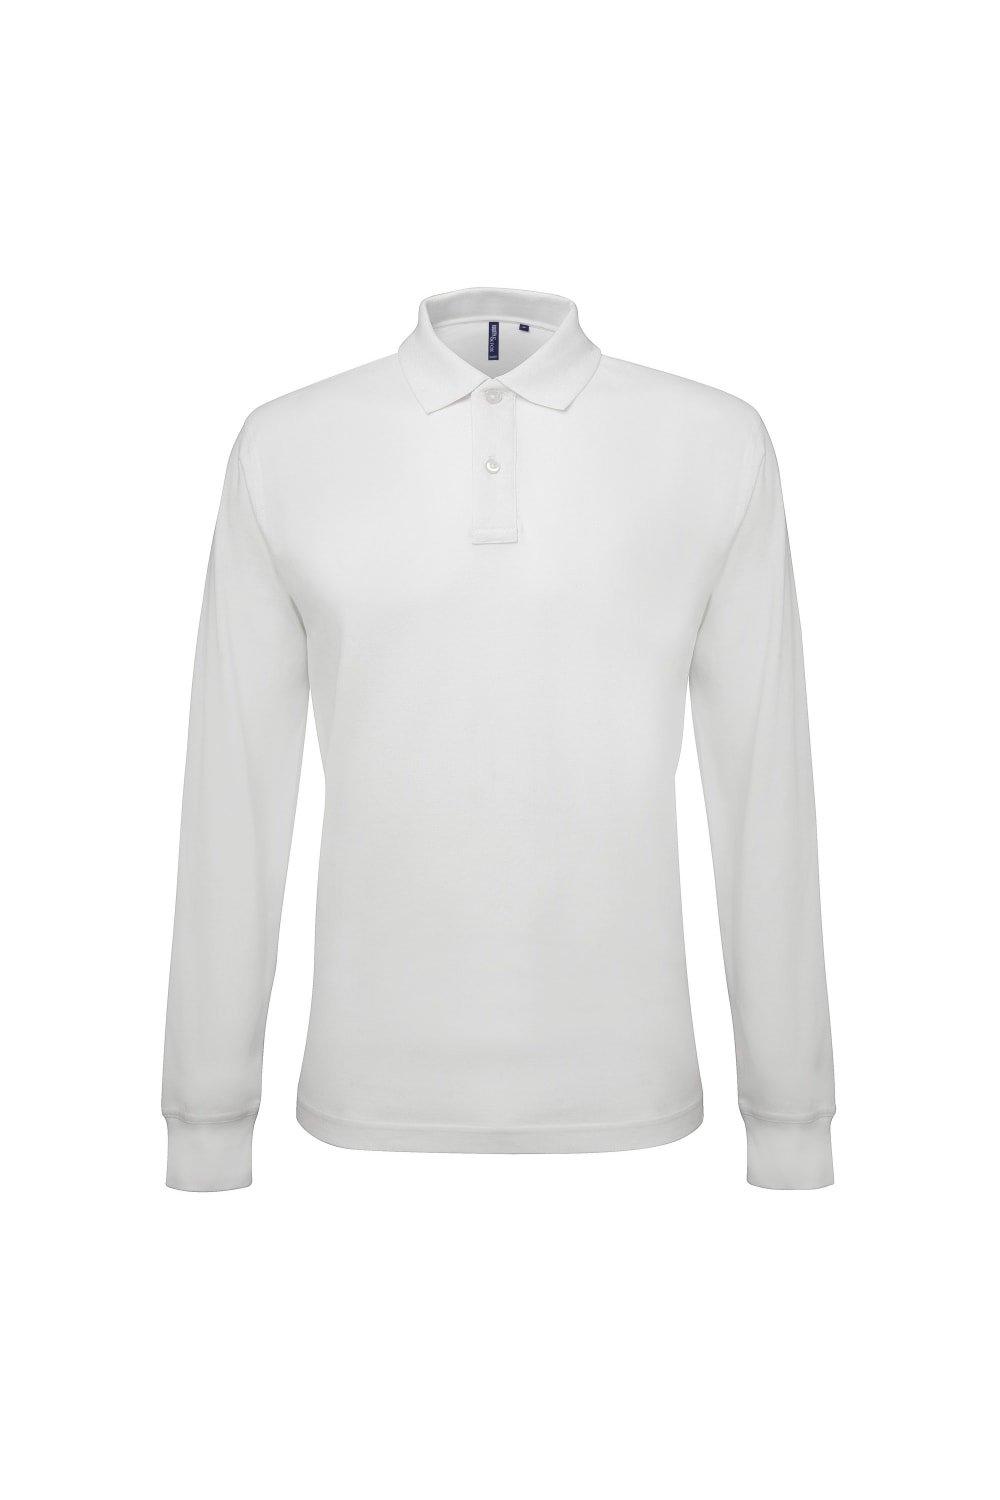 Рубашка поло классического кроя с длинными рукавами Asquith & Fox, белый фото